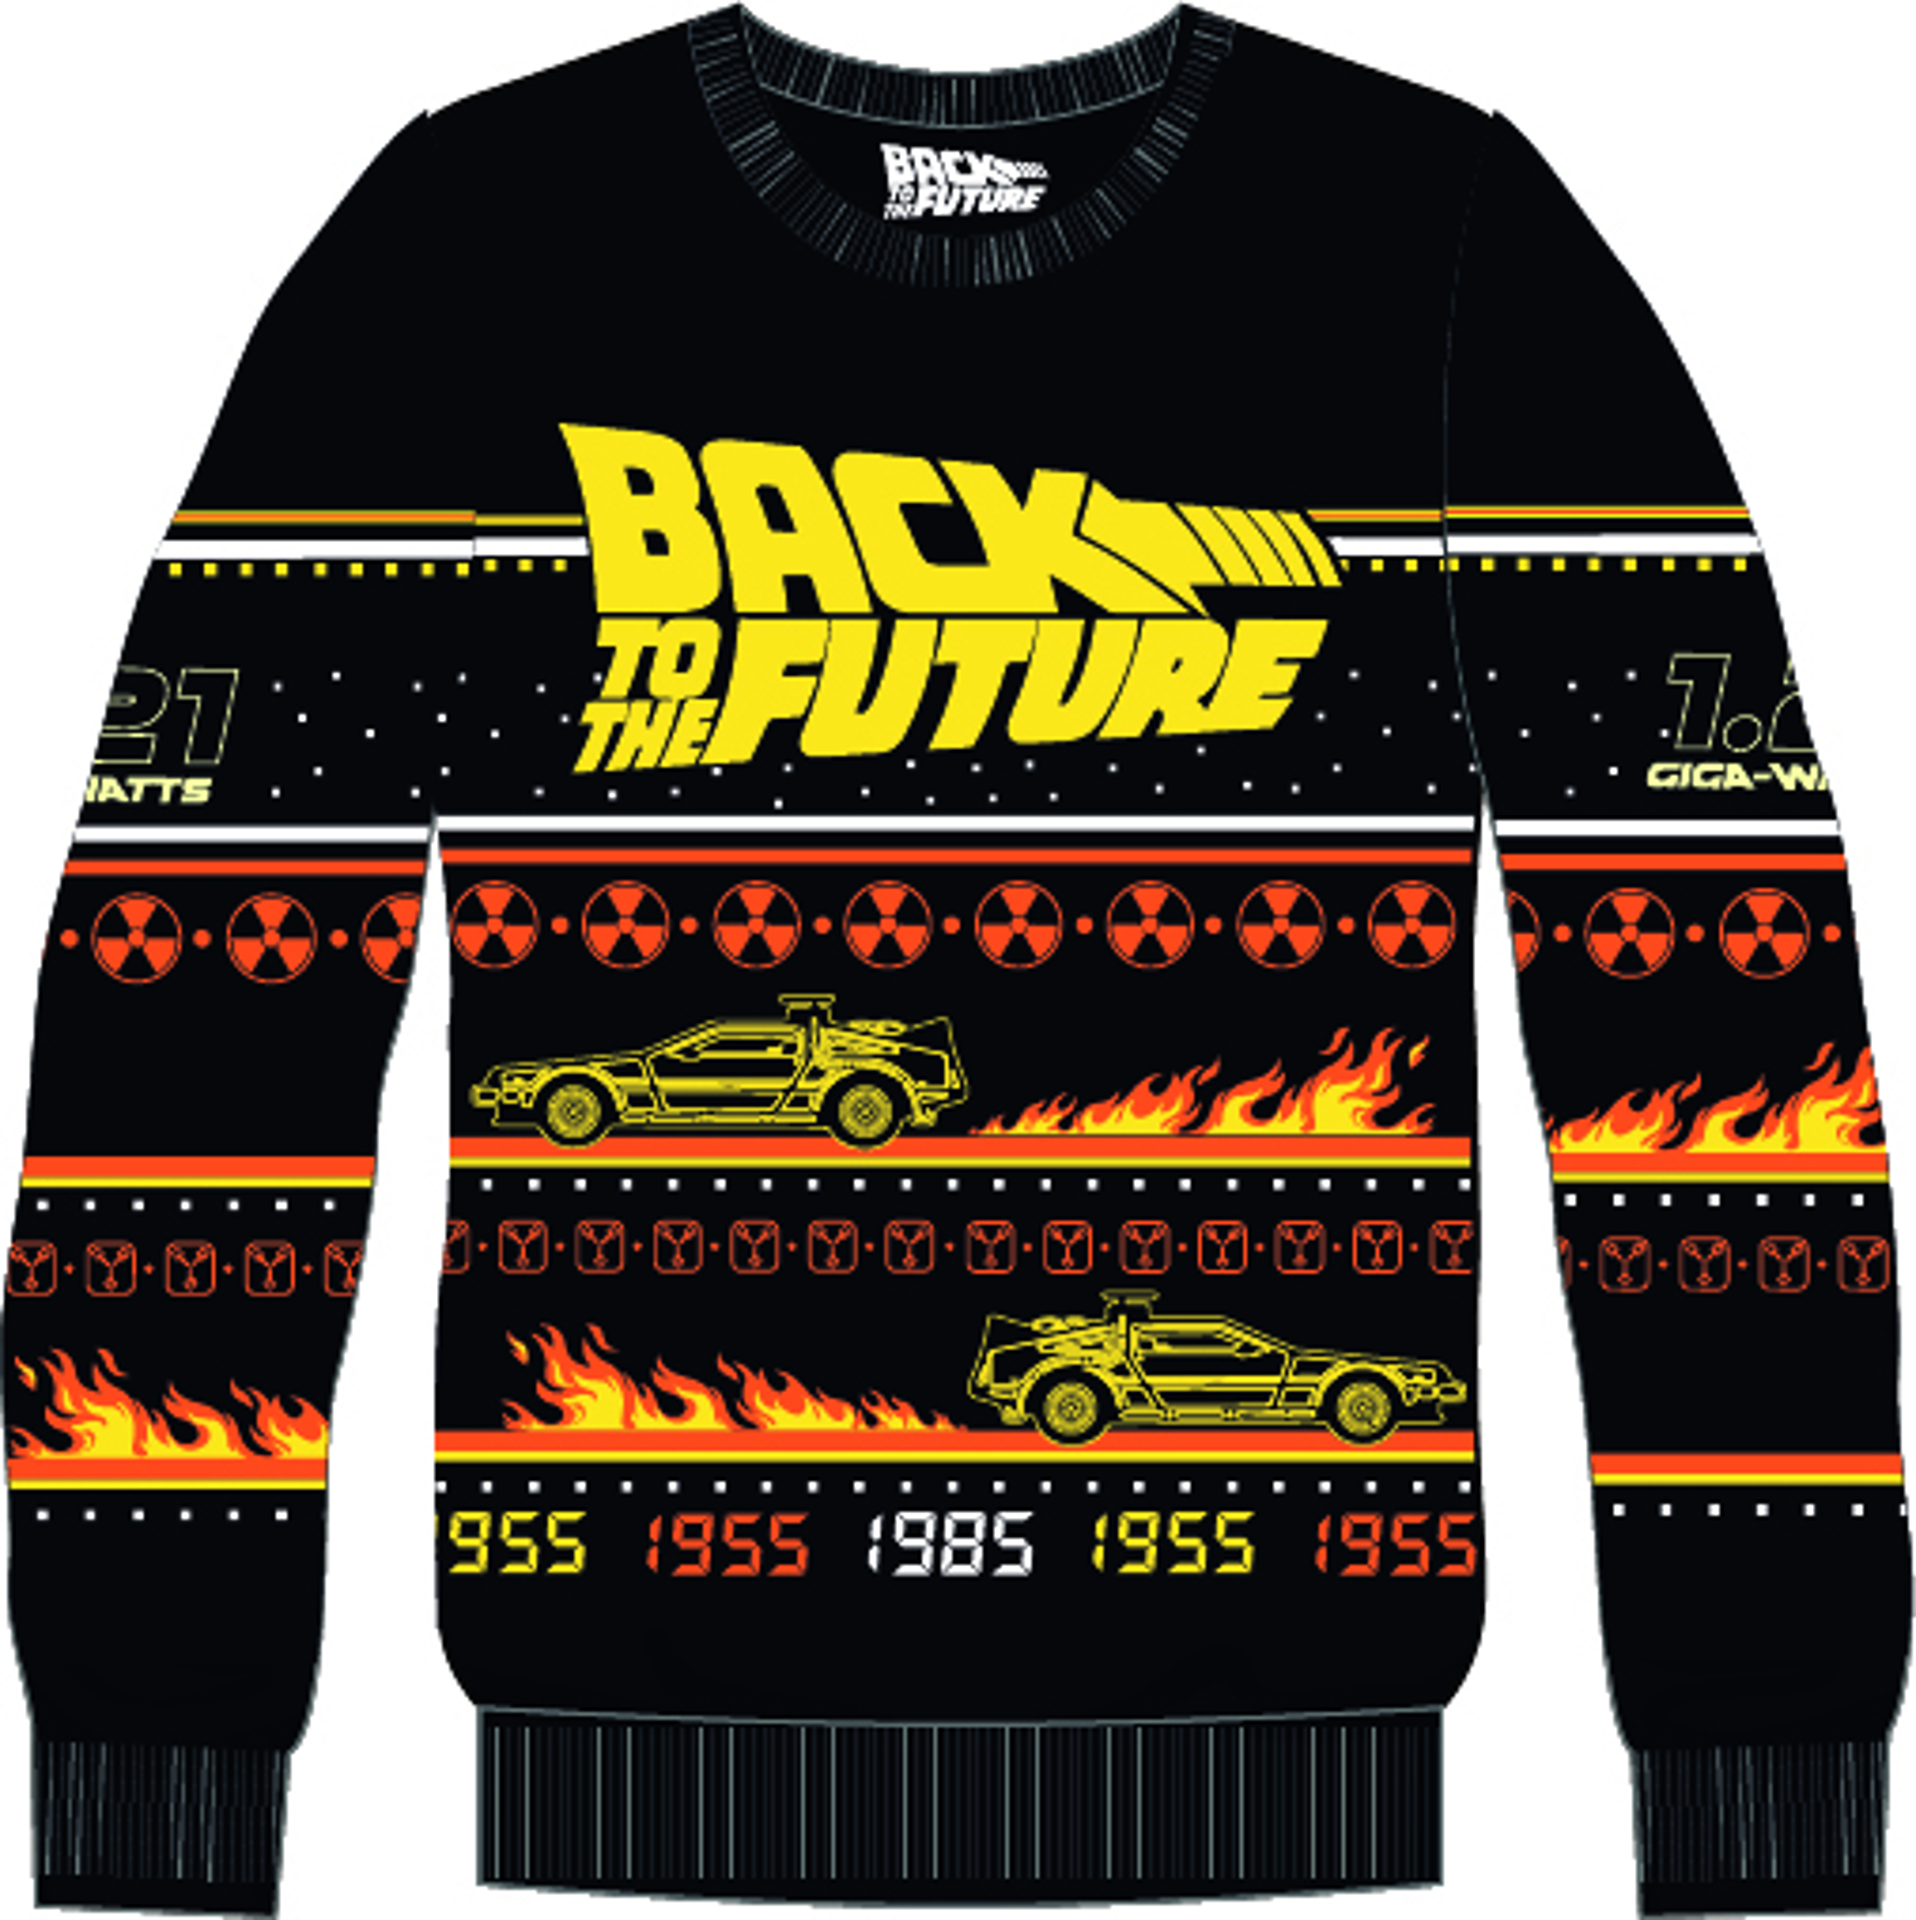 Retour Vers Le Futur - Christmas Sweater S